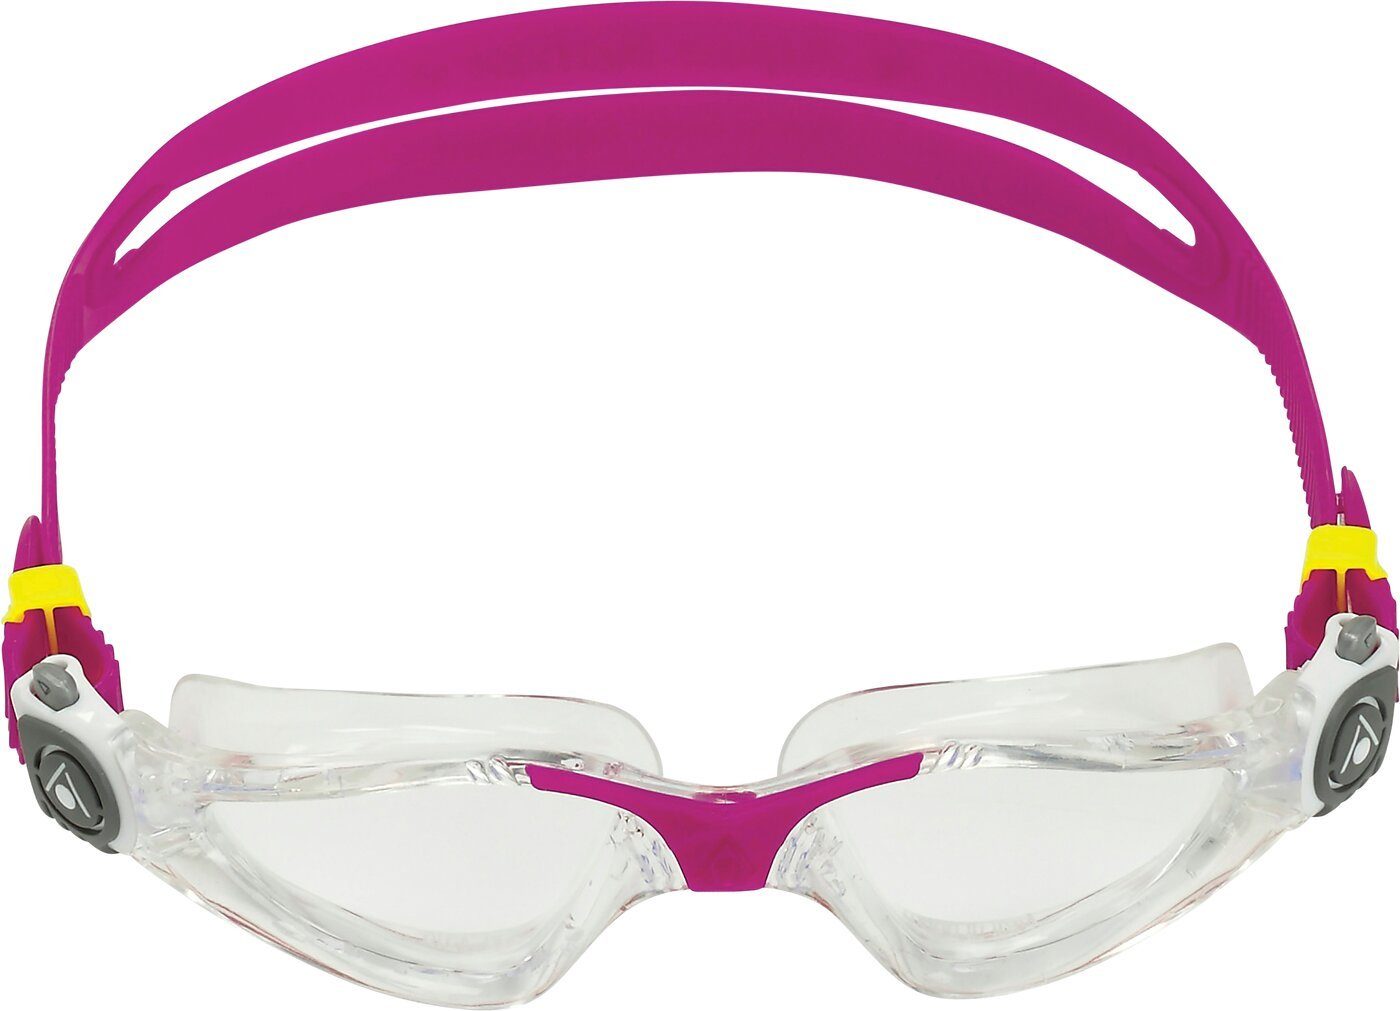 Aqua Sphere Brillen online kaufen | OTTO | Brillen